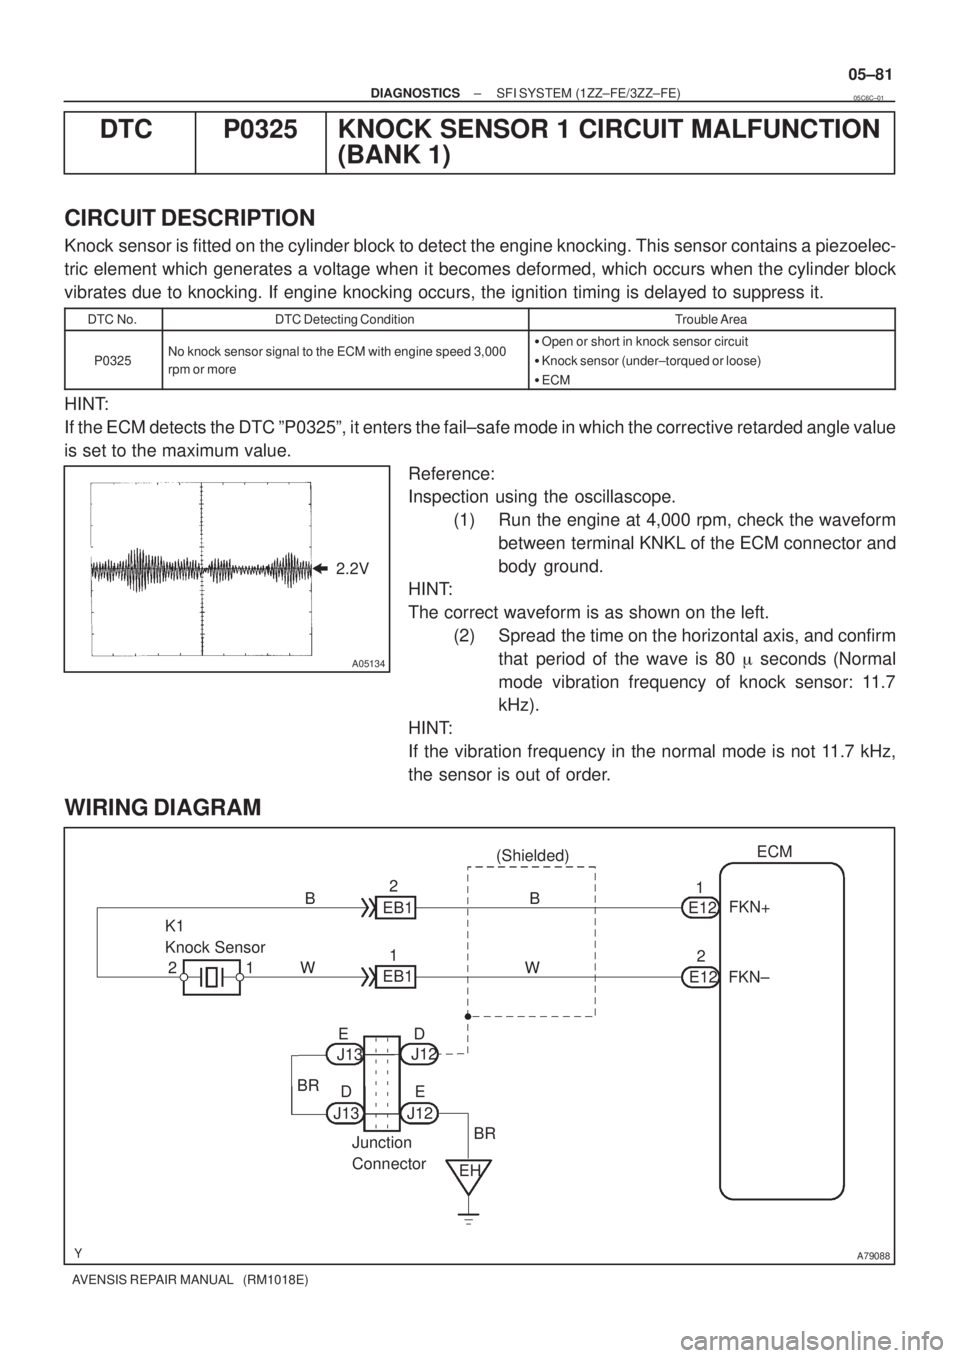 TOYOTA AVENSIS 2005  Service Repair Manual 
A05134
2.2V
A79088
K1
Knock SensorECM
FKN+
E12 (Shielded)
1EB1
11
W
E122
FKN± B
EH J12
J13
Junction
Connector EDEB1 2WB2
BR
BR J12 J13E D
± DIAGNOSTICSSFI SYSTEM (1ZZ±FE/3ZZ±FE)
05±81
AVENSIS